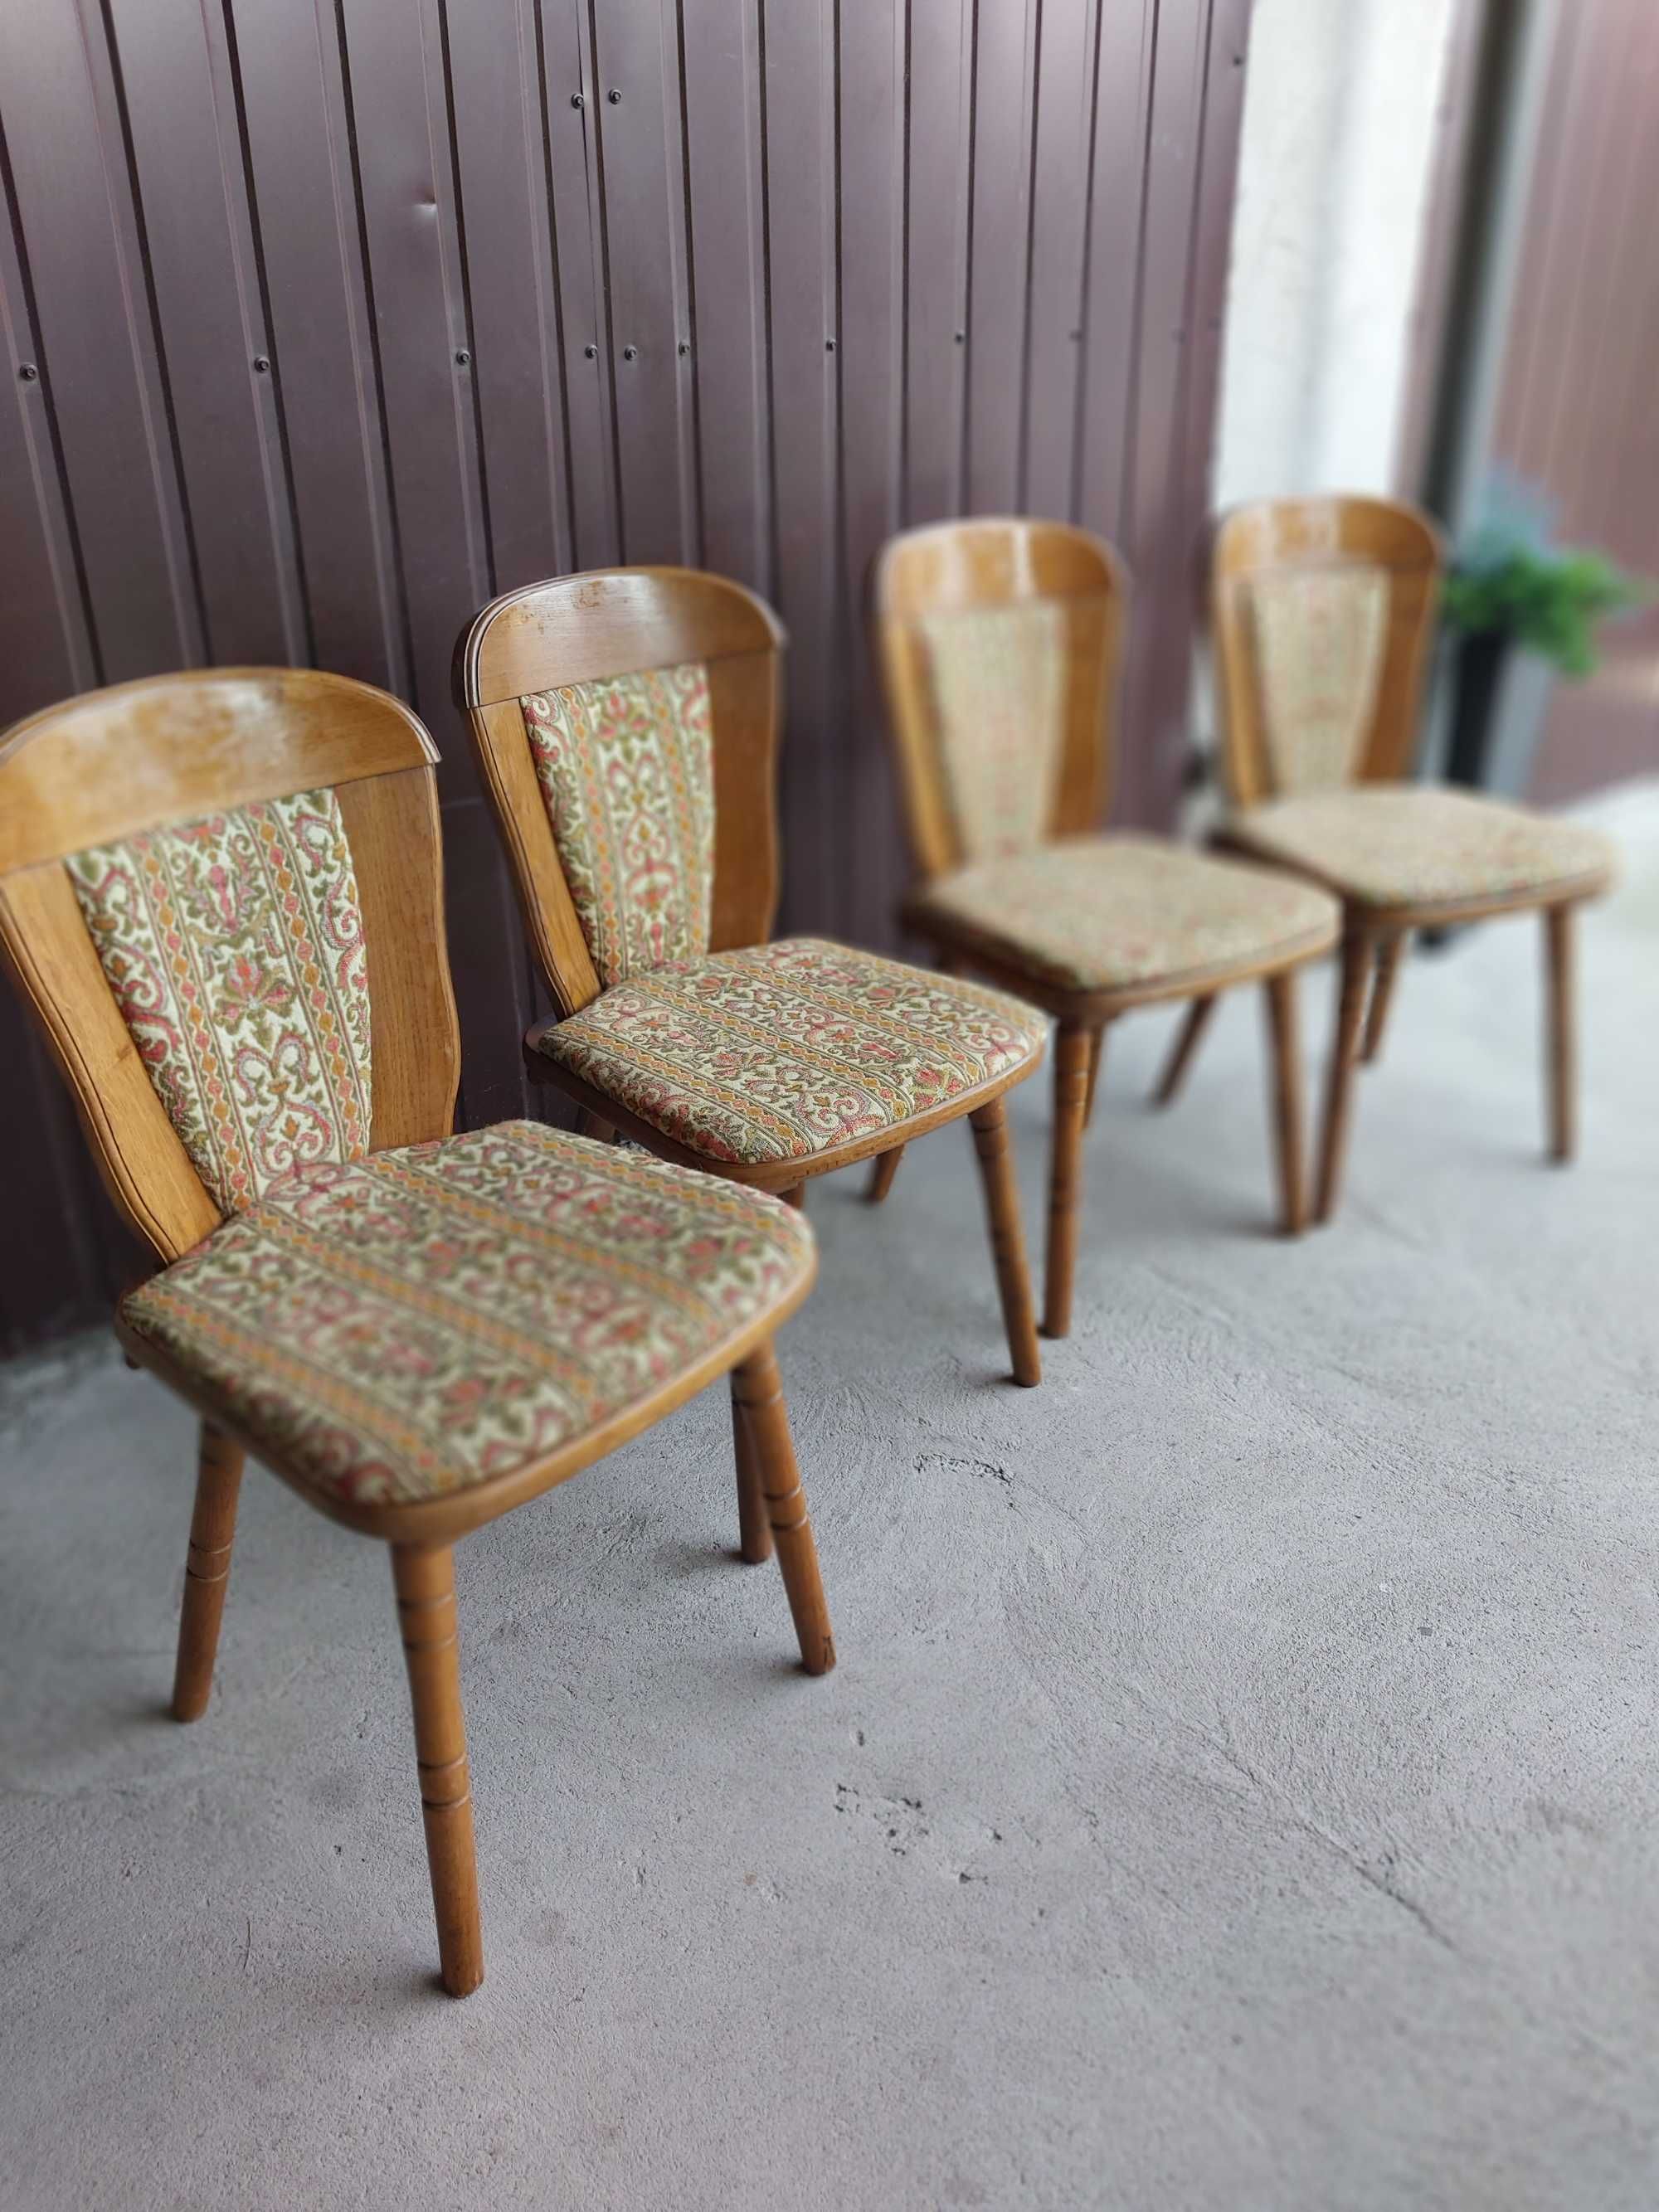 krzesła - komplet 4 sztuki  / 901